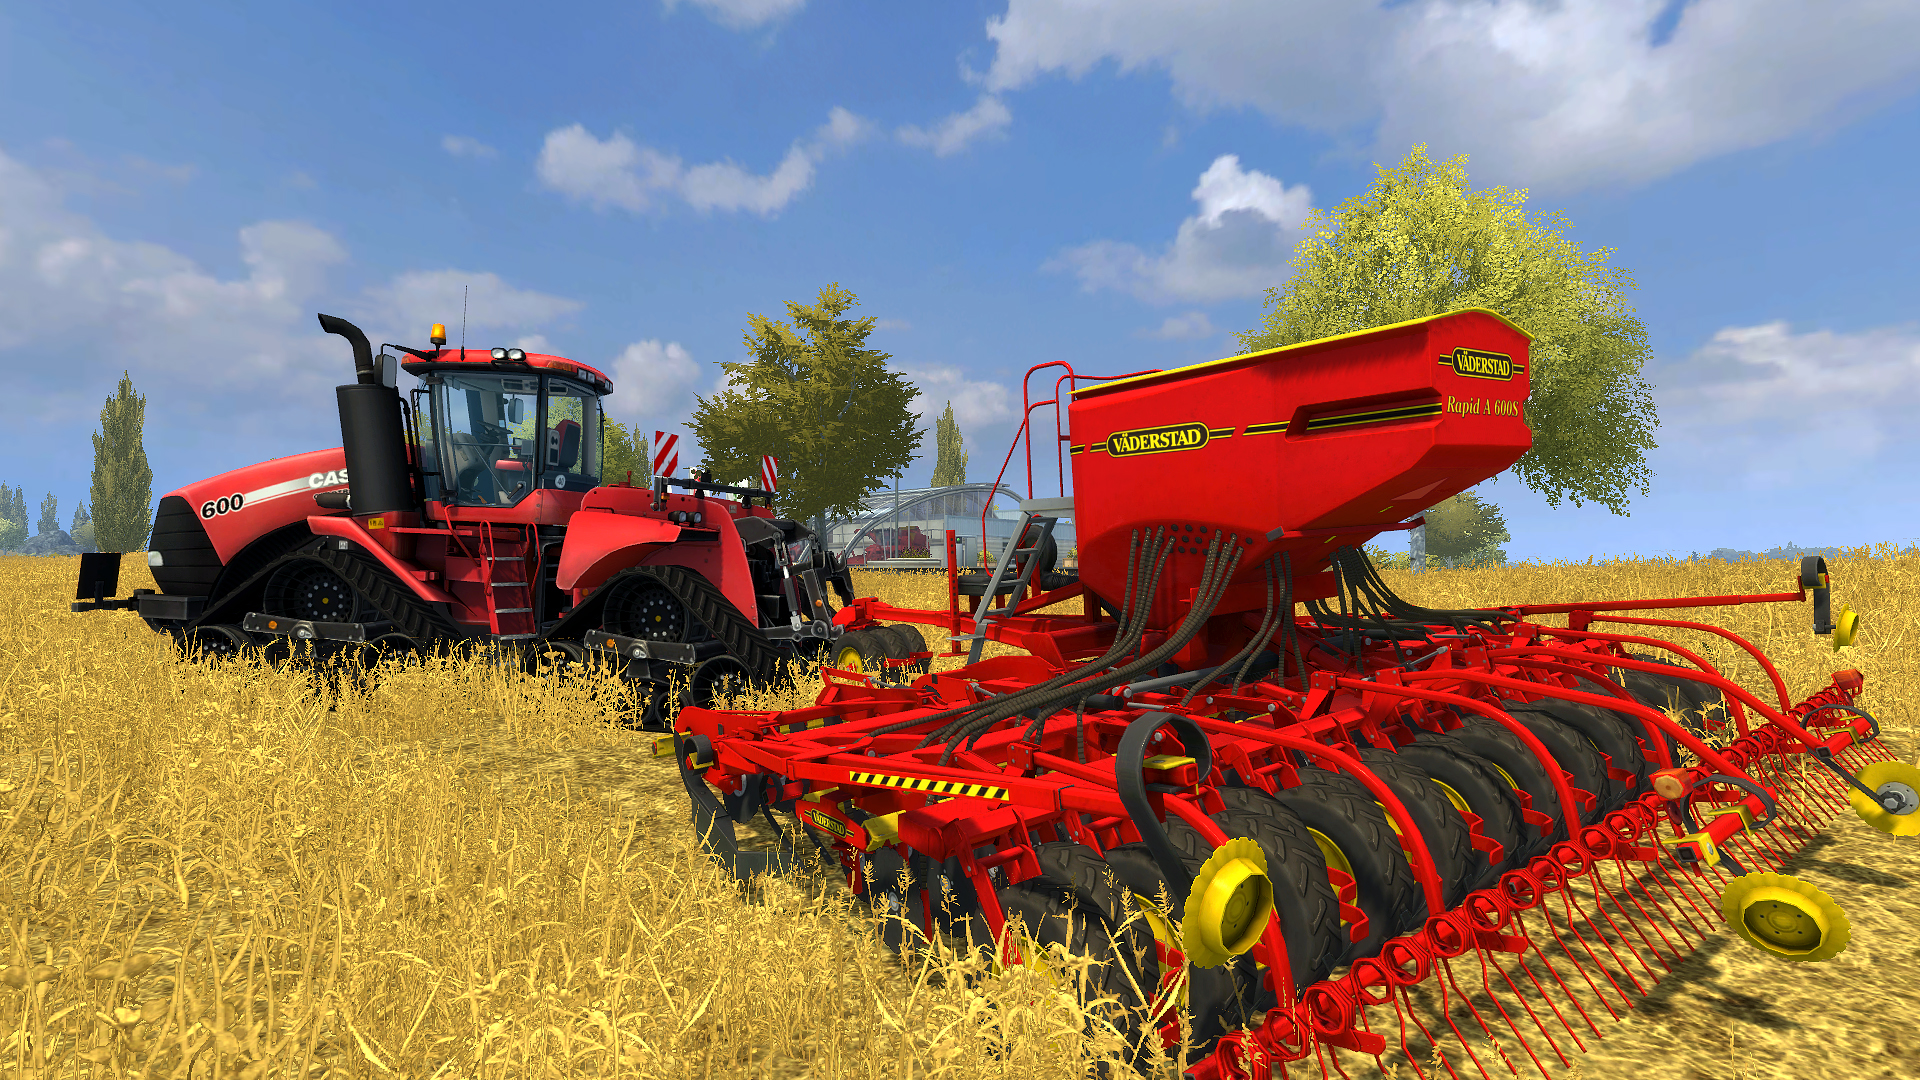 [$ 3.38] Farming Simulator 2013 - Väderstad DLC Steam CD Key